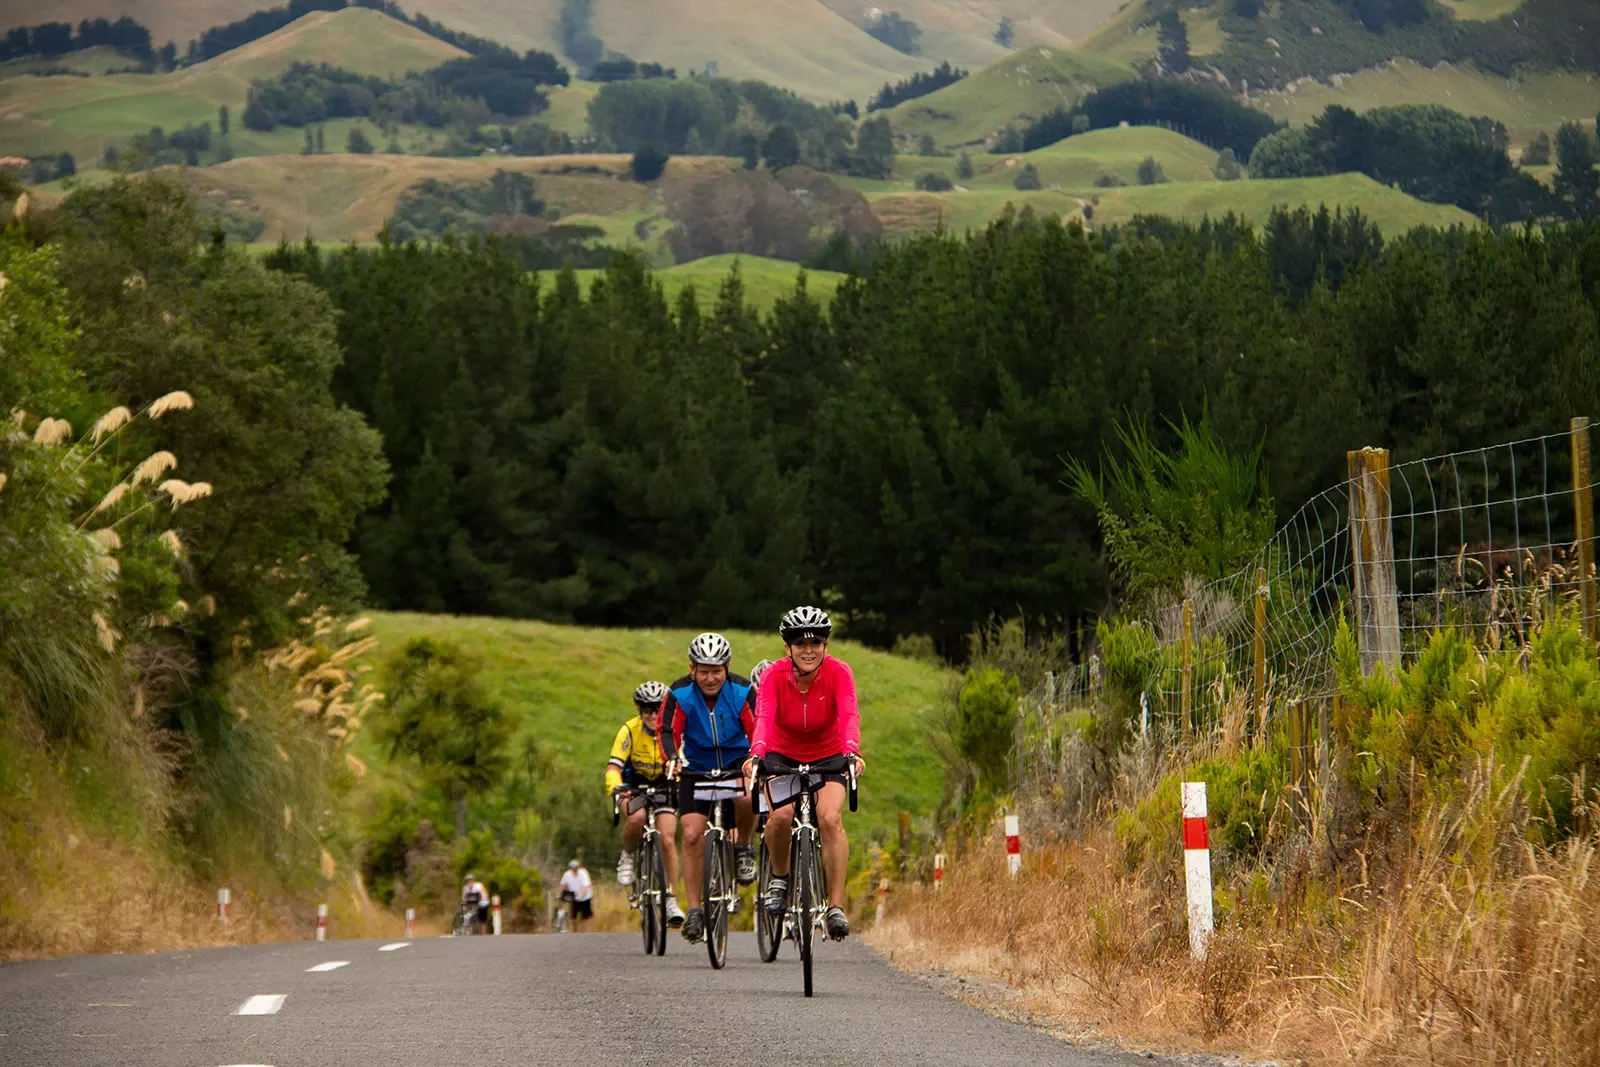 Biking along a road among grassy fields in New Zealand